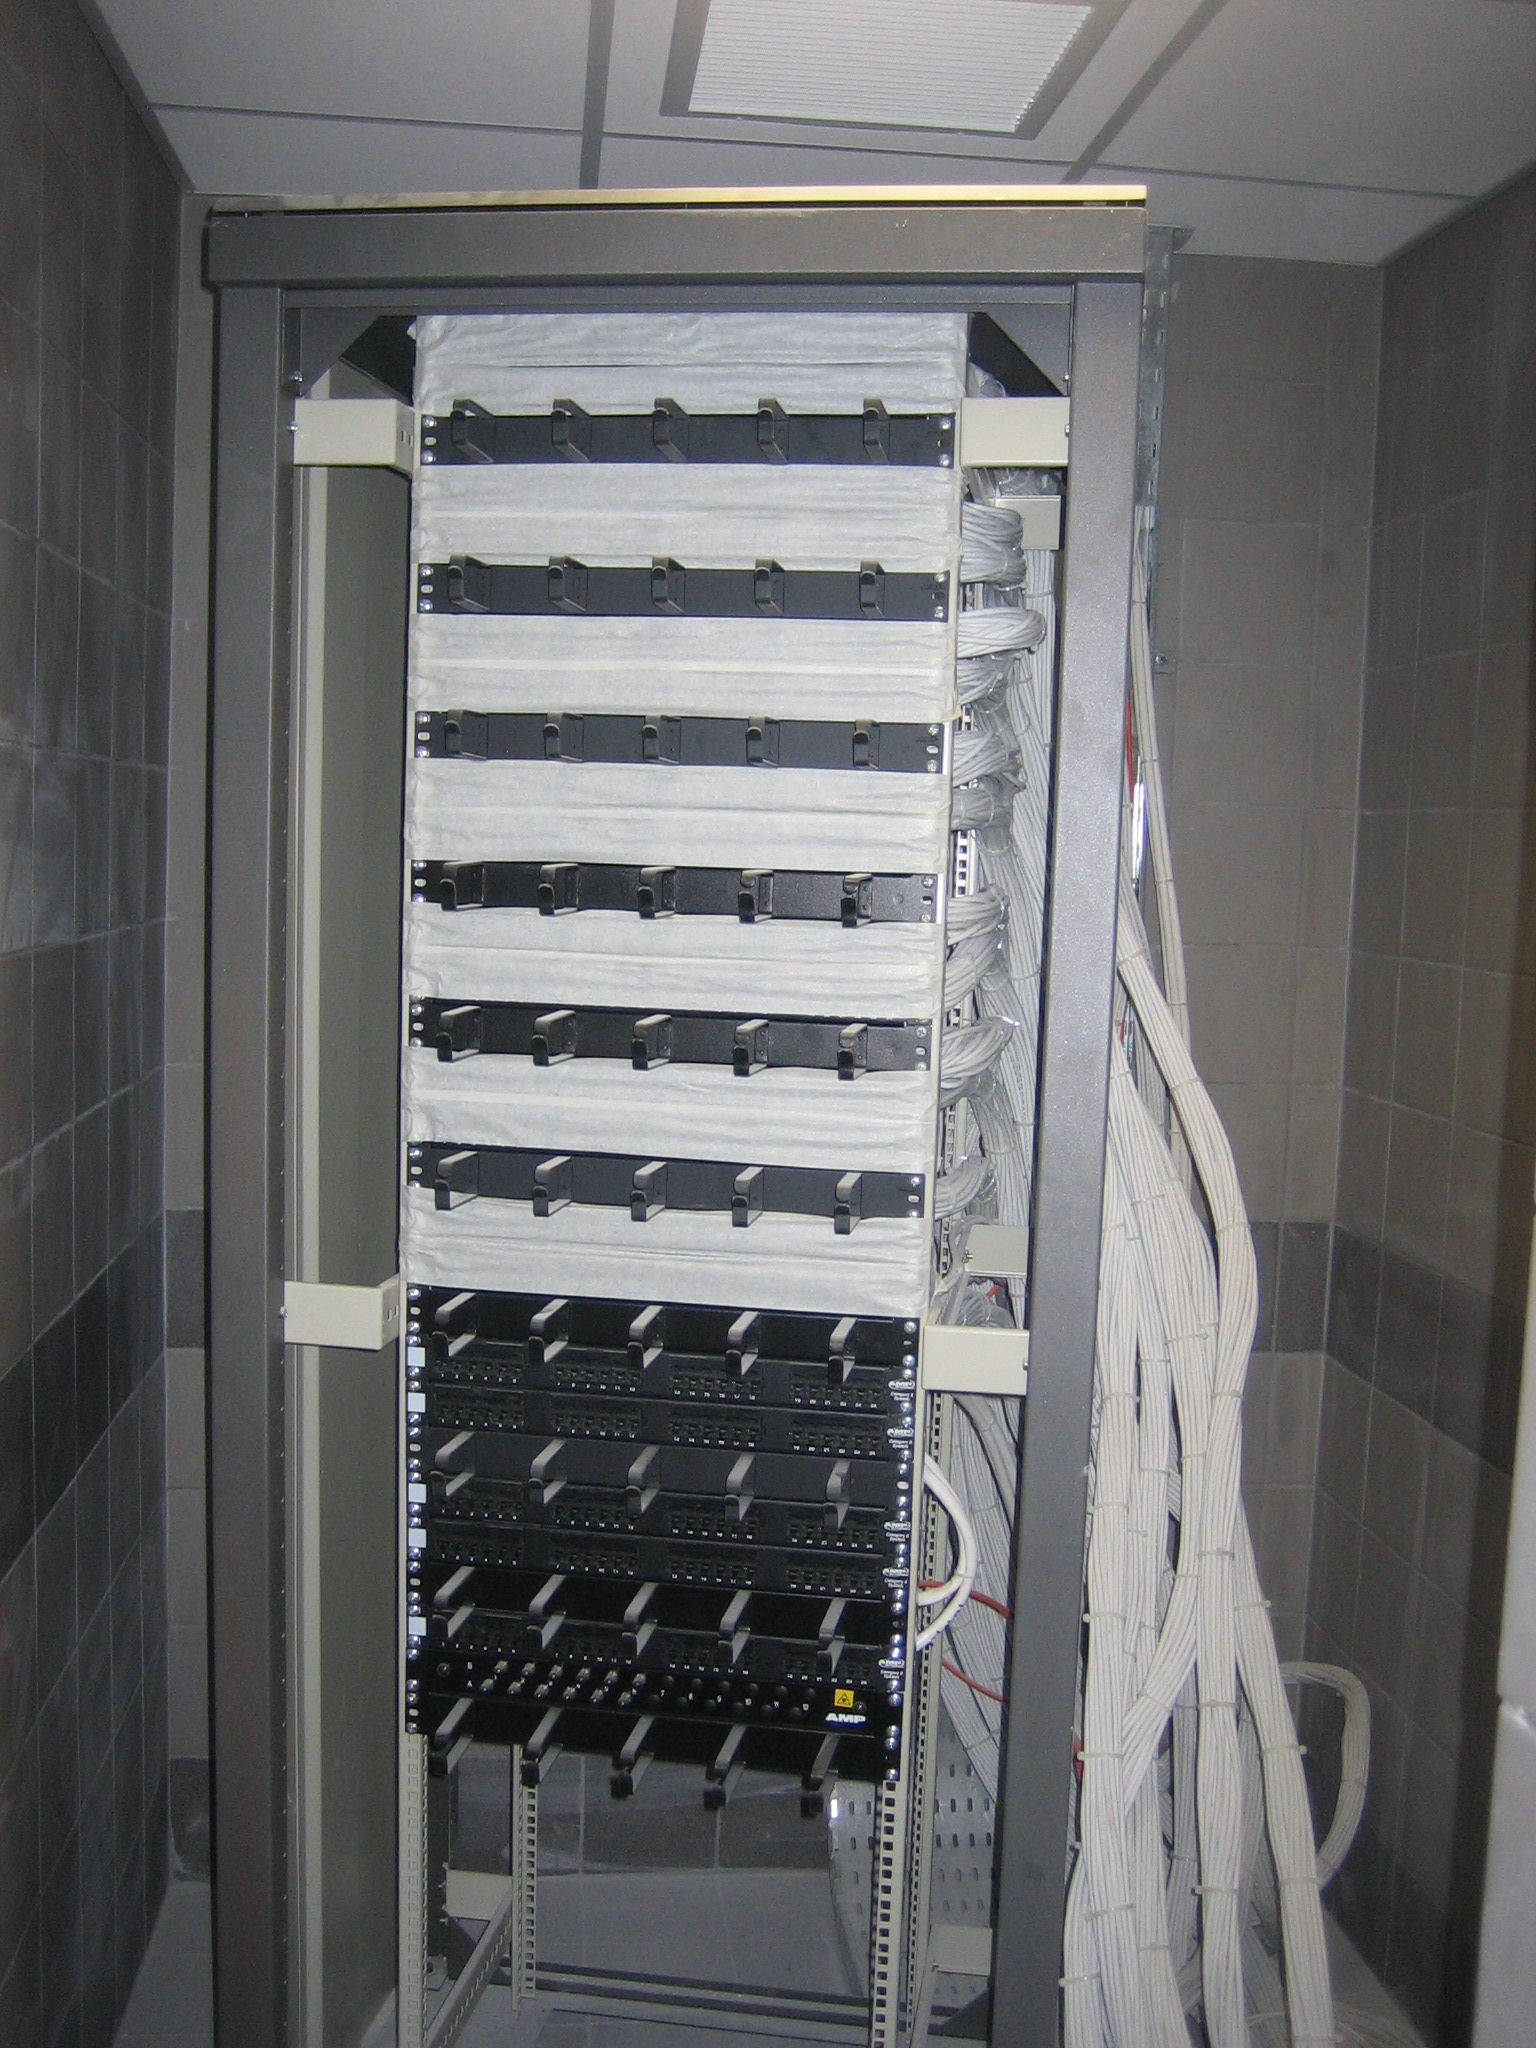 460Συστήματα Δομημένης Καλωδίωσης, με UTP, FTP, STP και Fiber Optic τεχνολογία